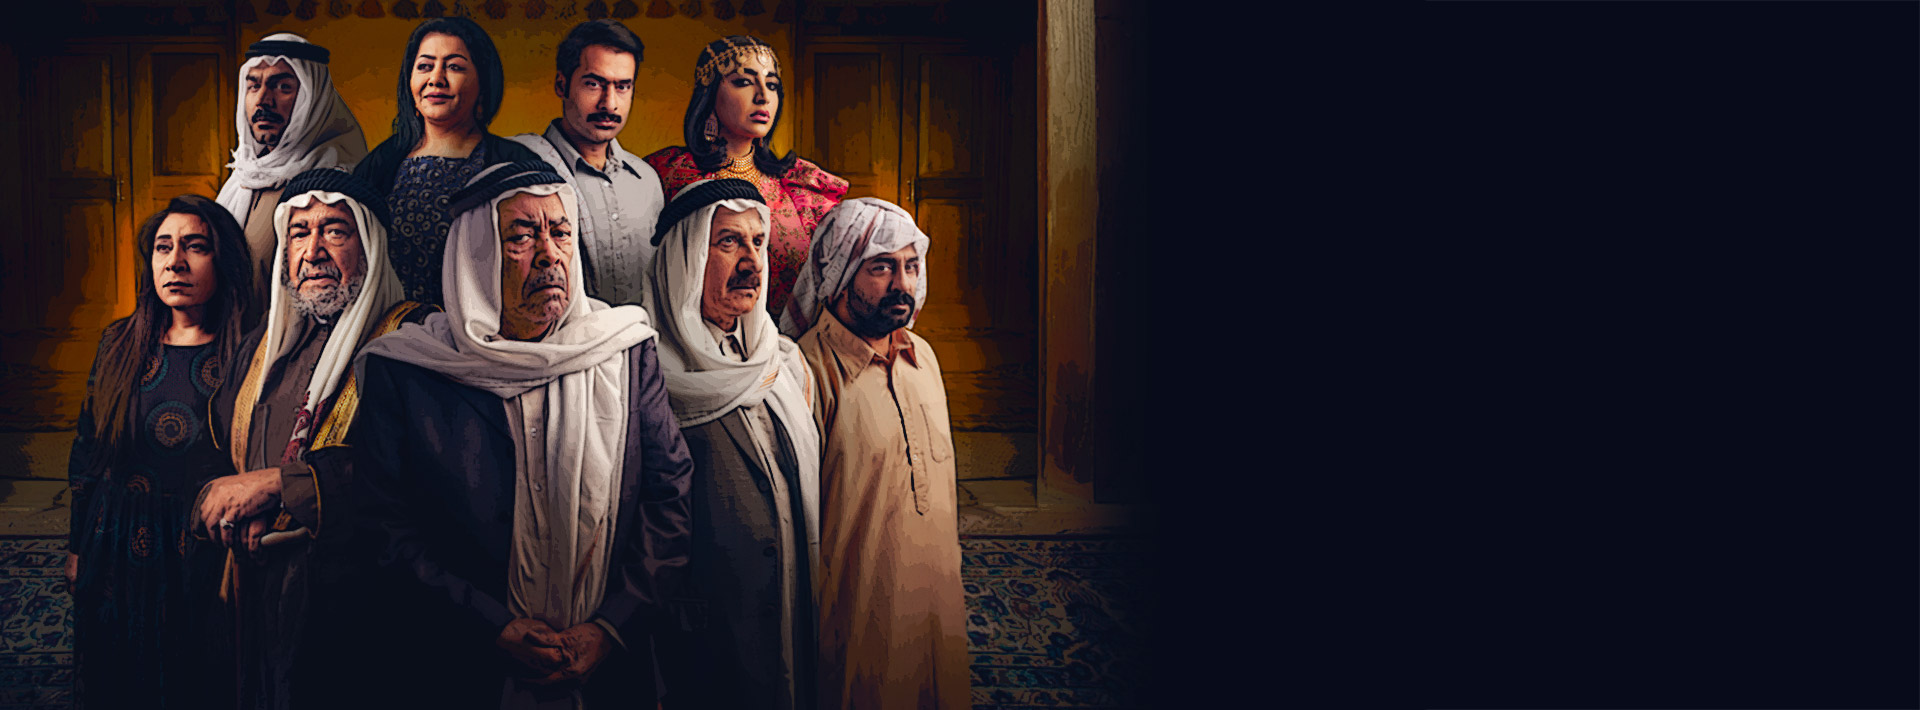 موعد وتوقيت عرض مسلسل محمد علي رود على قناة البحرين رمضان 2020